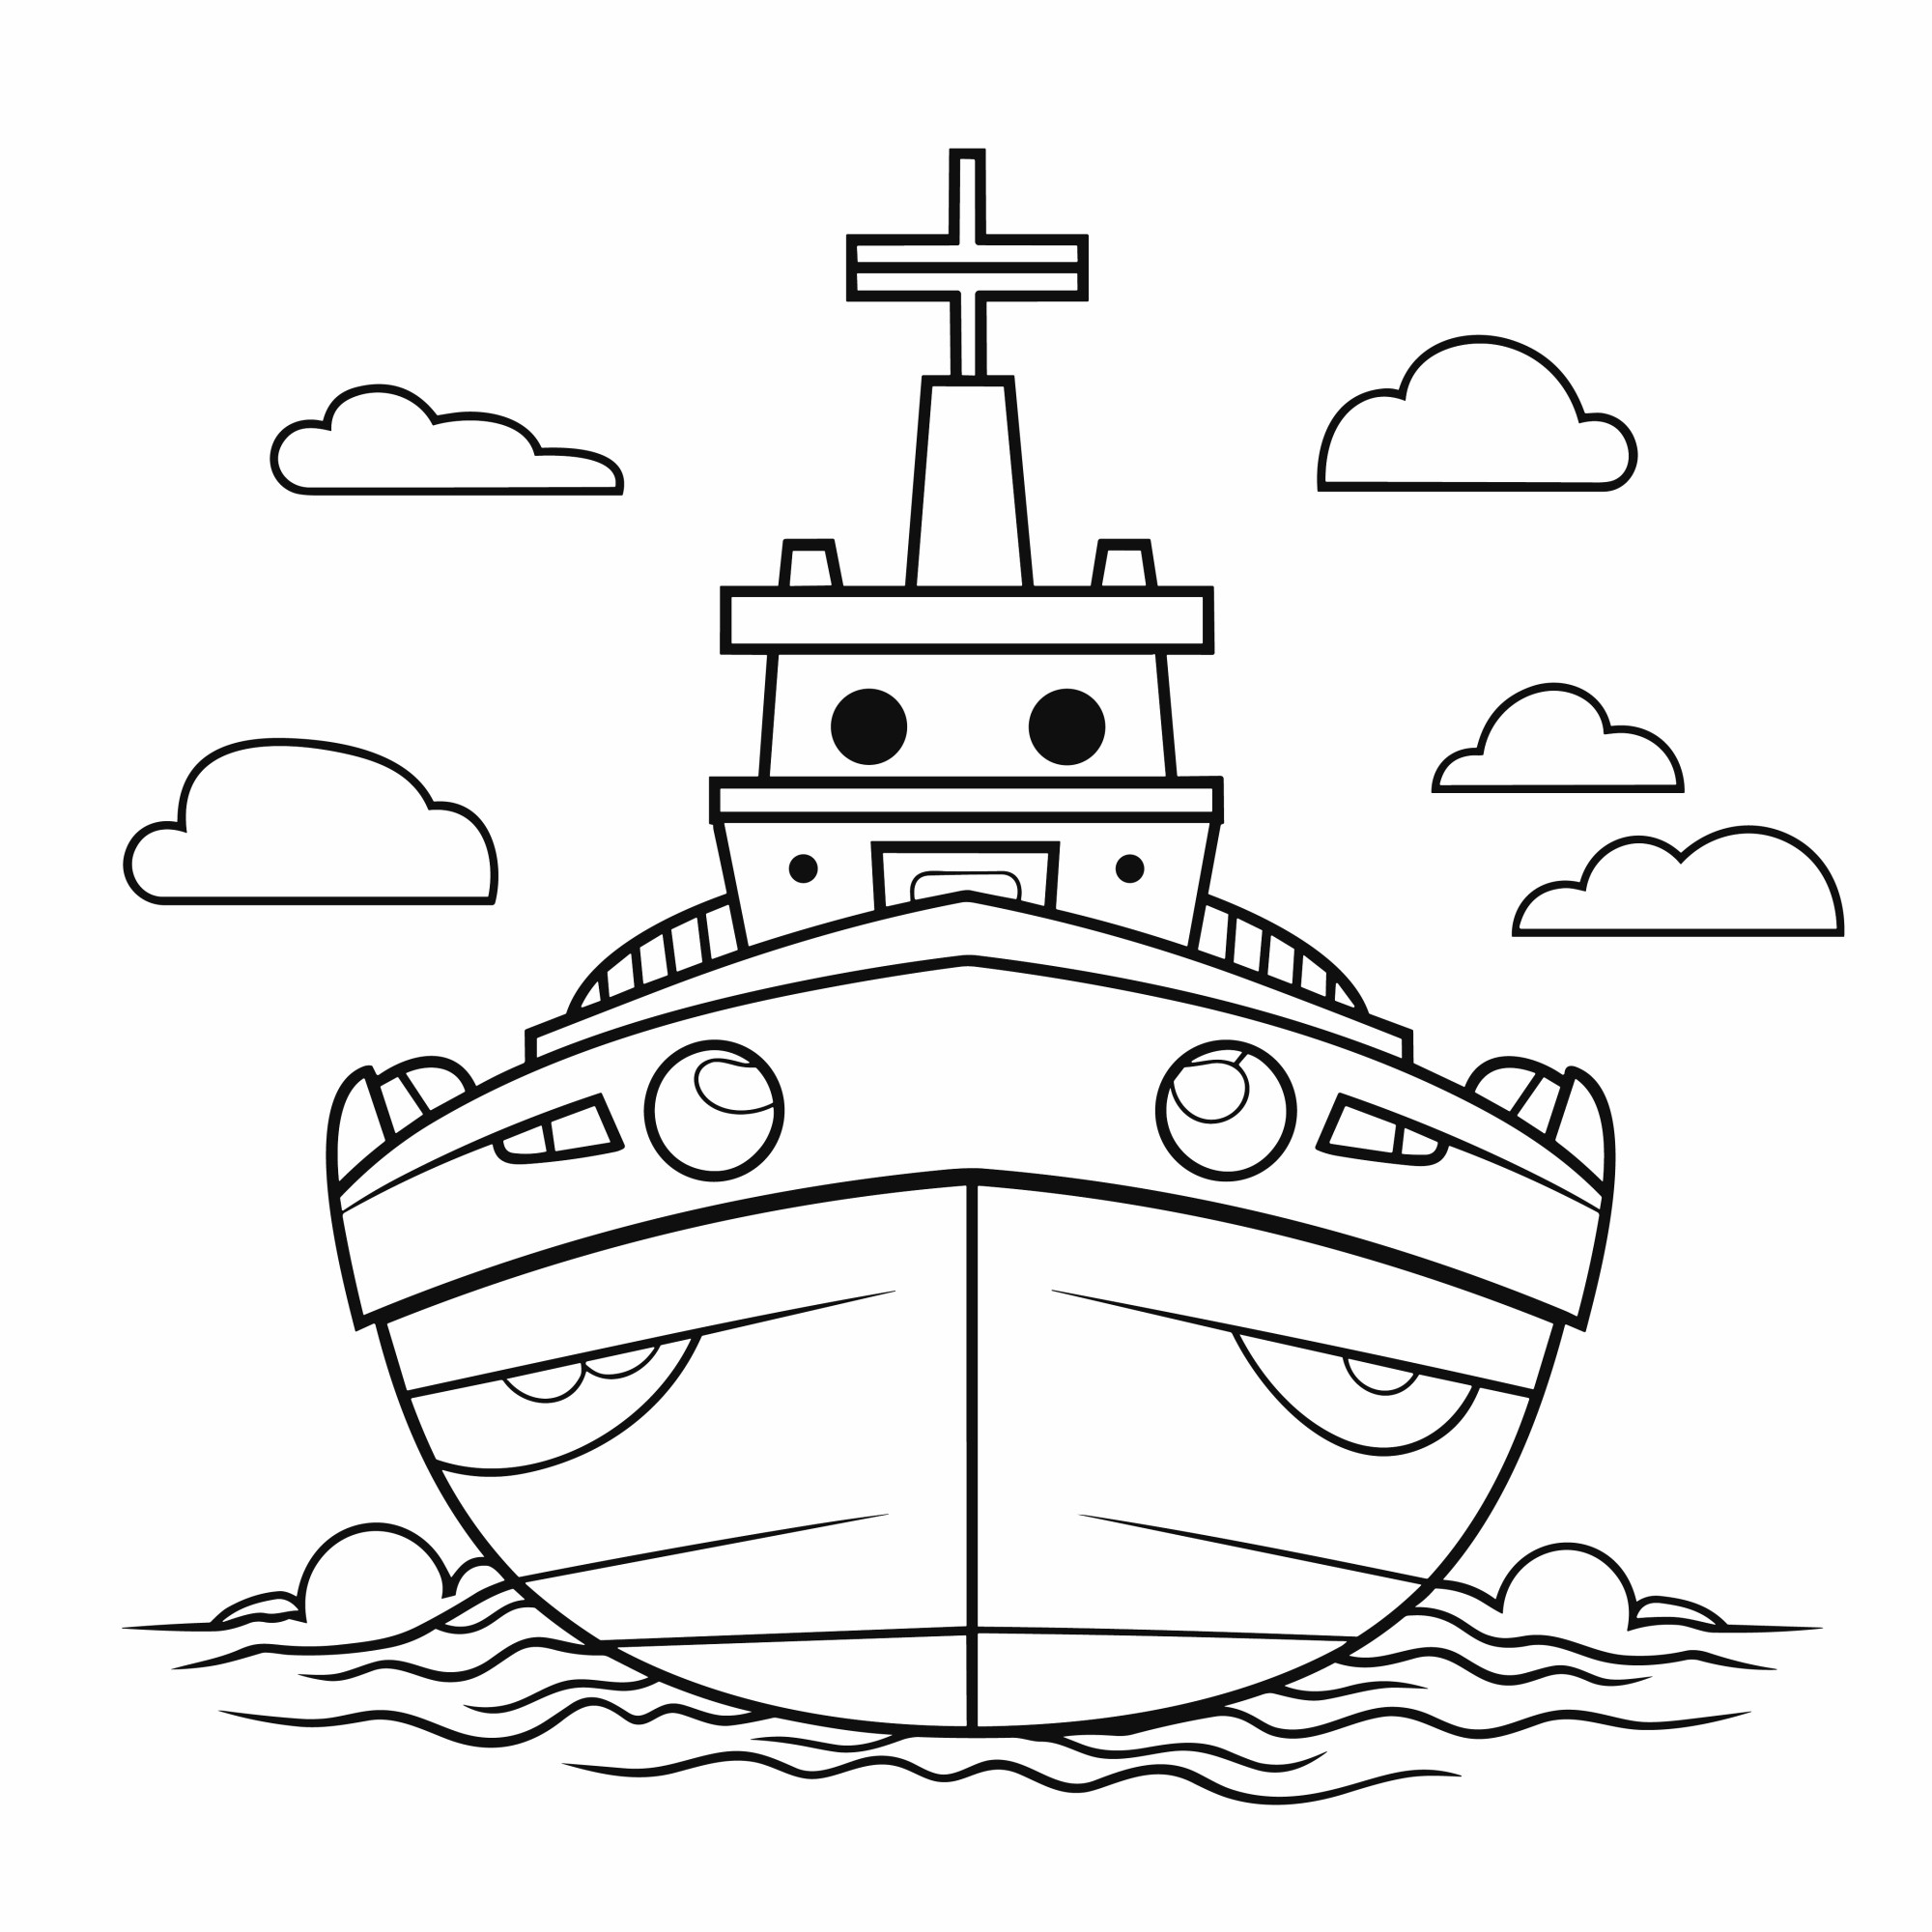 Раскраска для детей: корабль идет по морю на фоне облаков